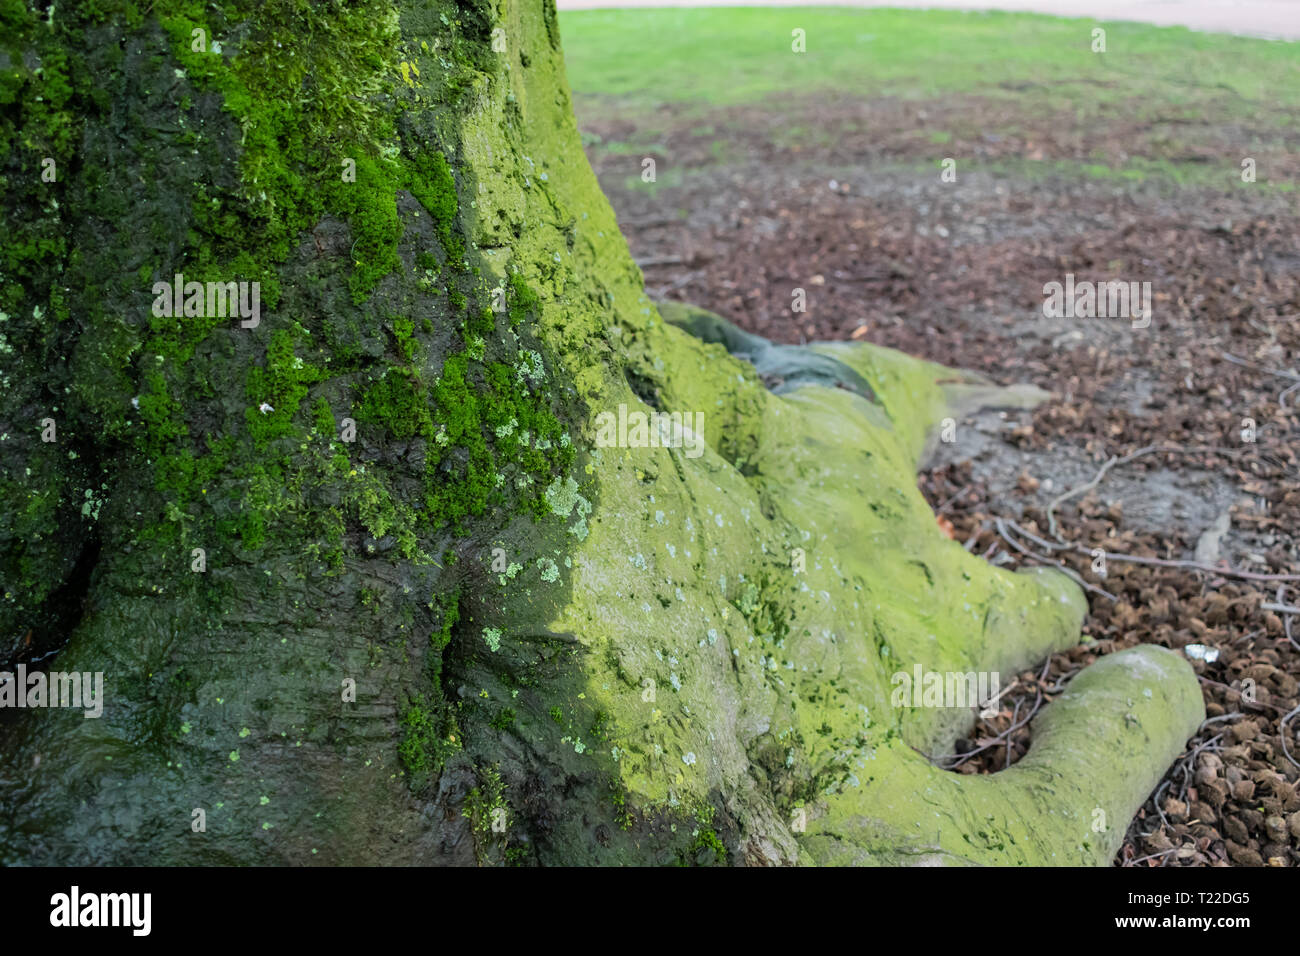 Nahaufnahme der Baumstamm mit Feder wächst Moos und Flechten. Offenen Raum. Scharfe Spitze mit unscharfem Hintergrund. Urban City Park in Deutschland Stockfoto